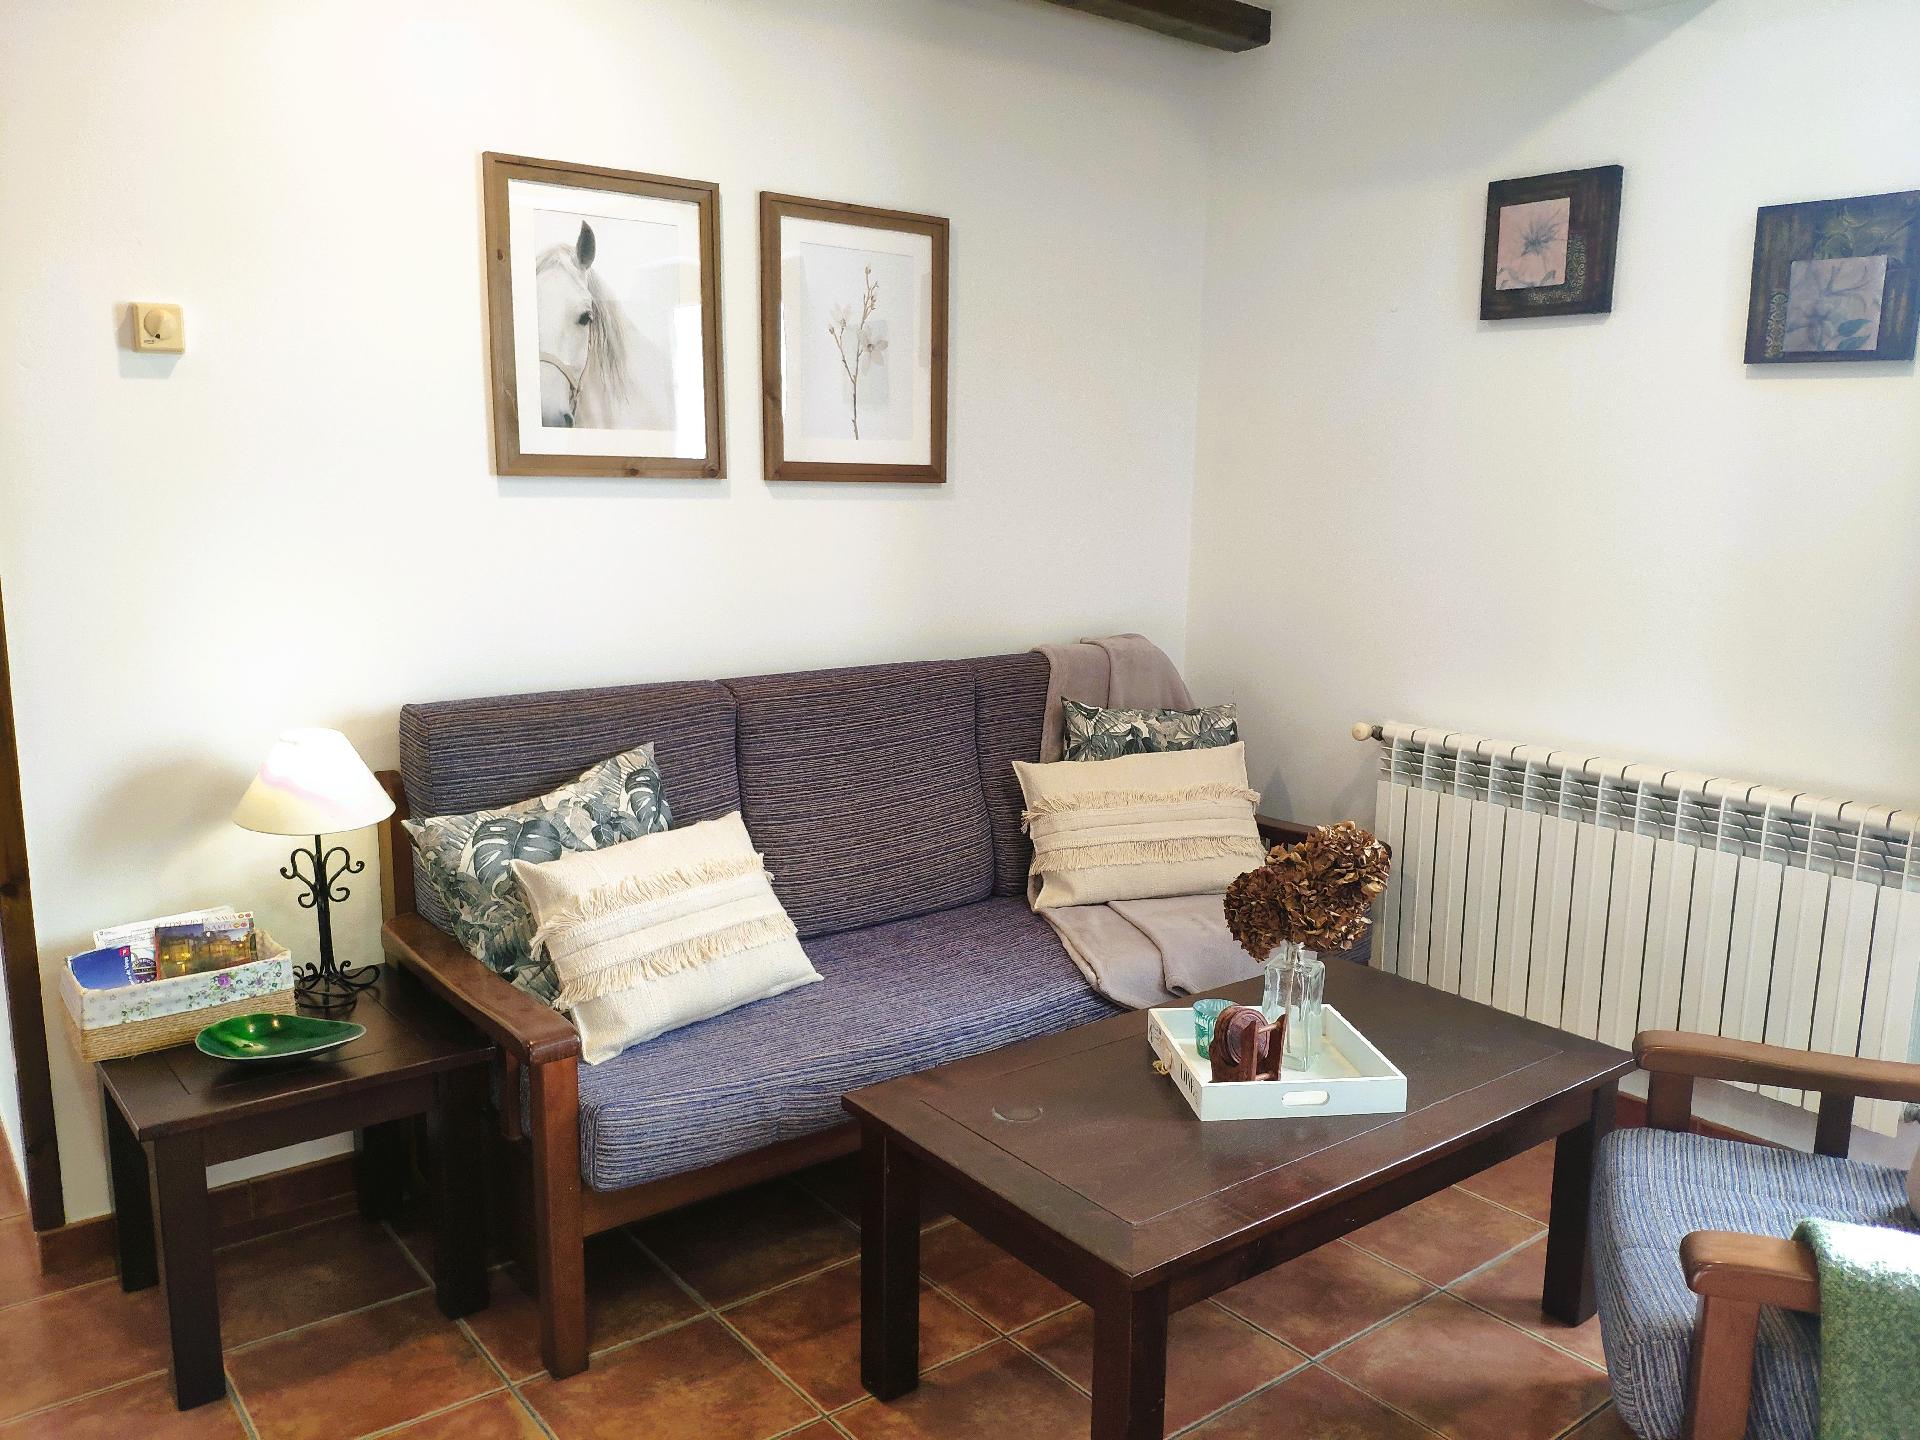 Appartement in Navia mit Garten, Terrasse und Gril Ferienhaus in Spanien